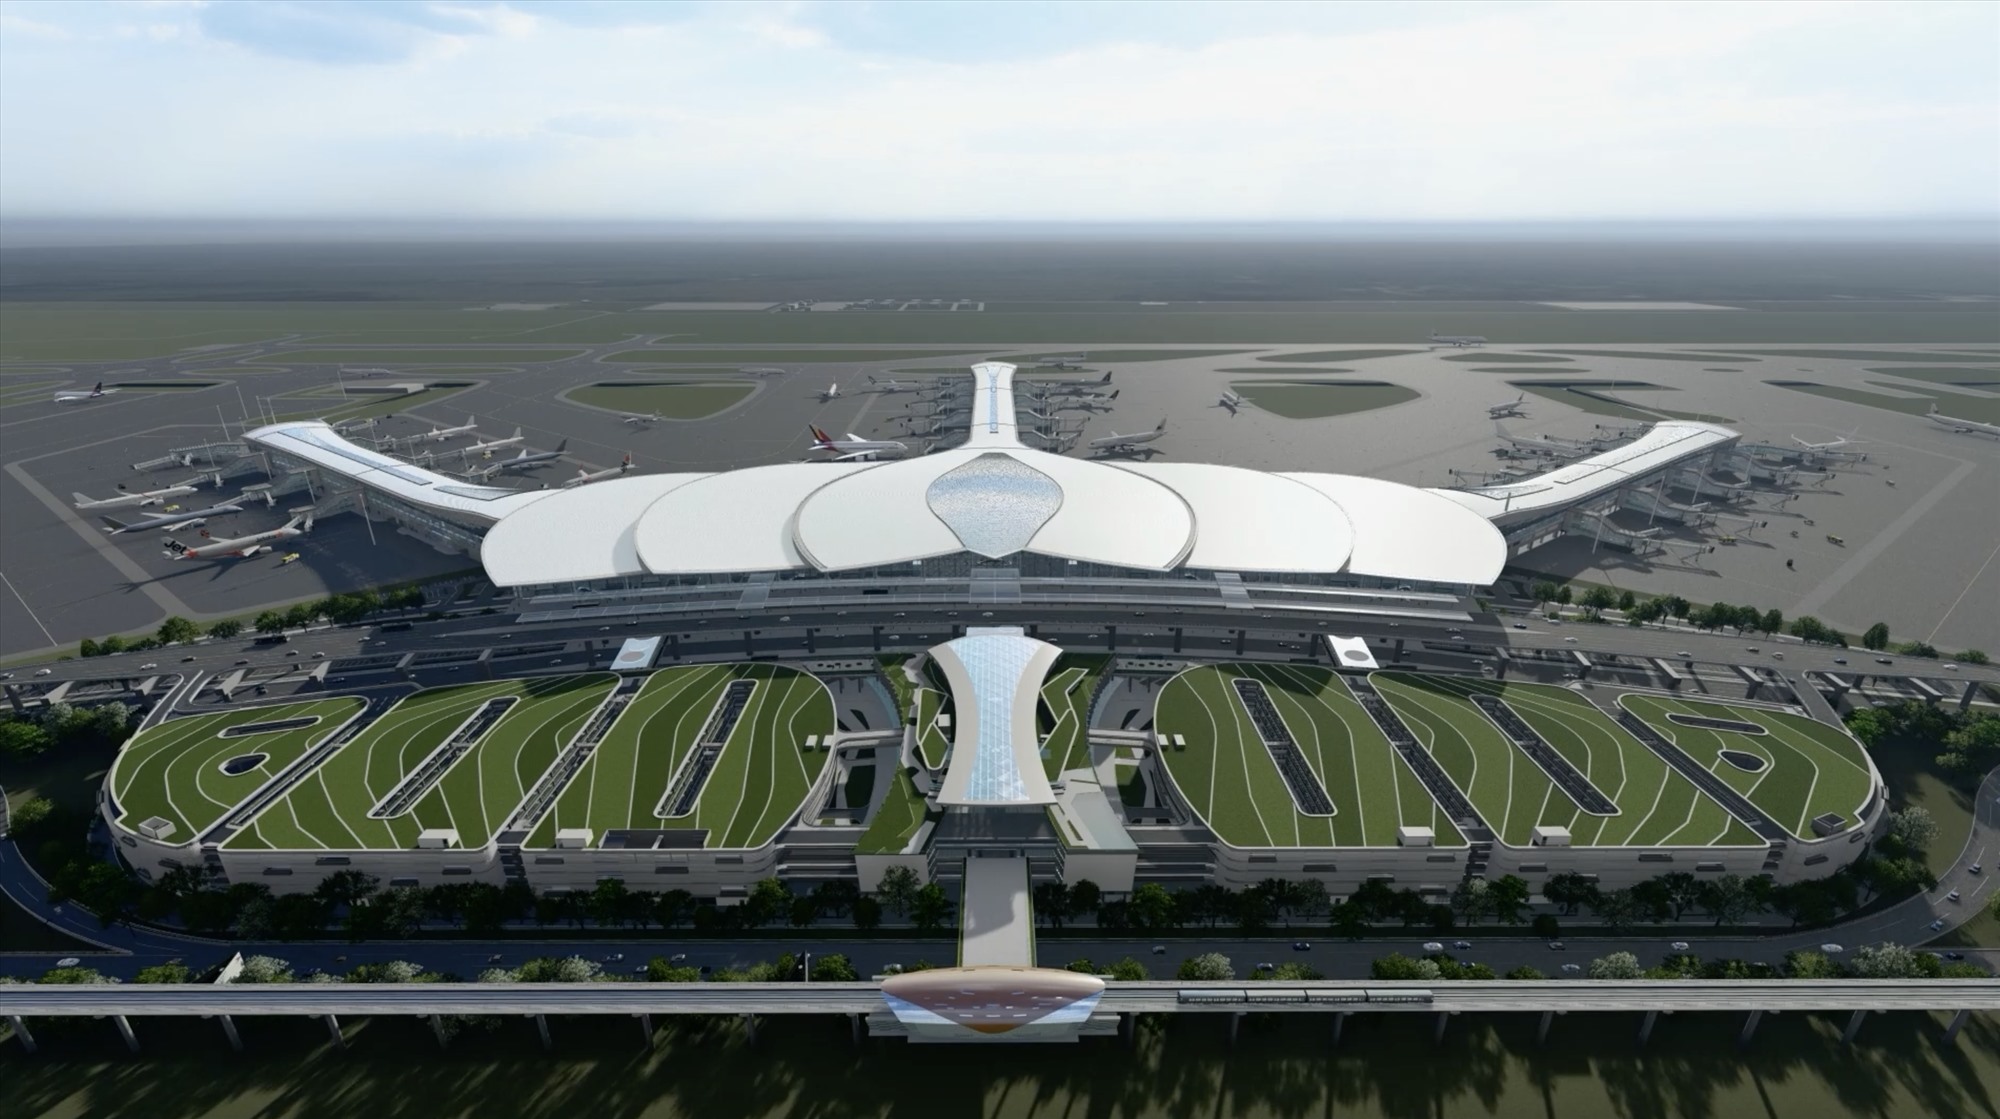 Phối cảnh nhà ga hành khách sân bay Long Thành giai đoạn 1 của gói thầu 5.10 sau khi hoàn thành. Ảnh: ACV